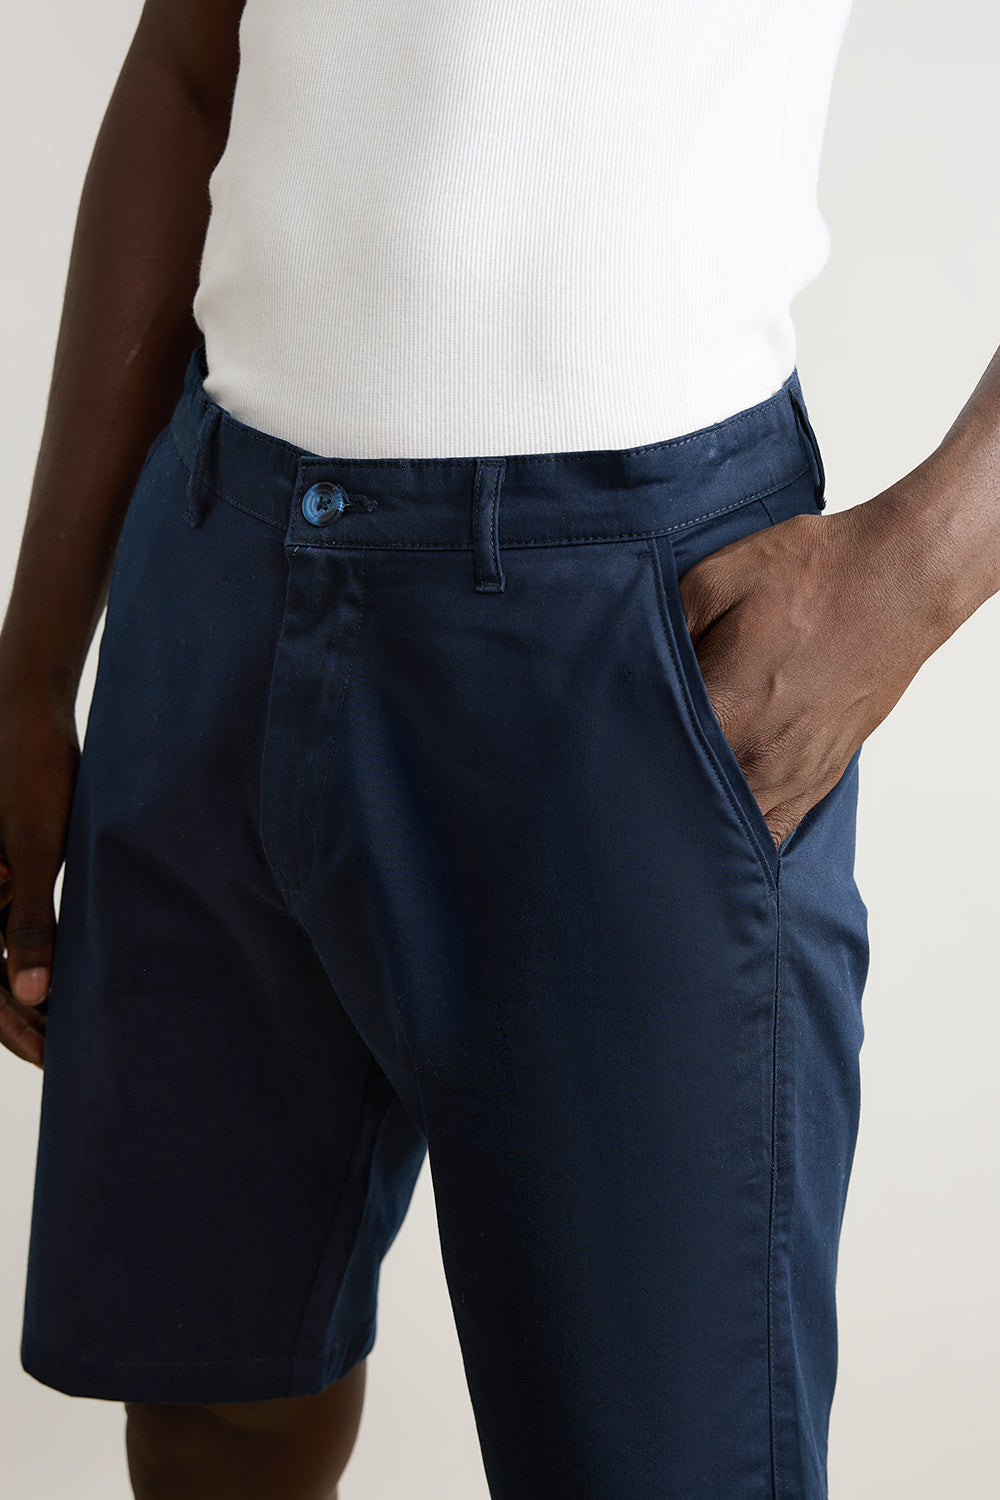 Men's Dark Blue Summer Shorts